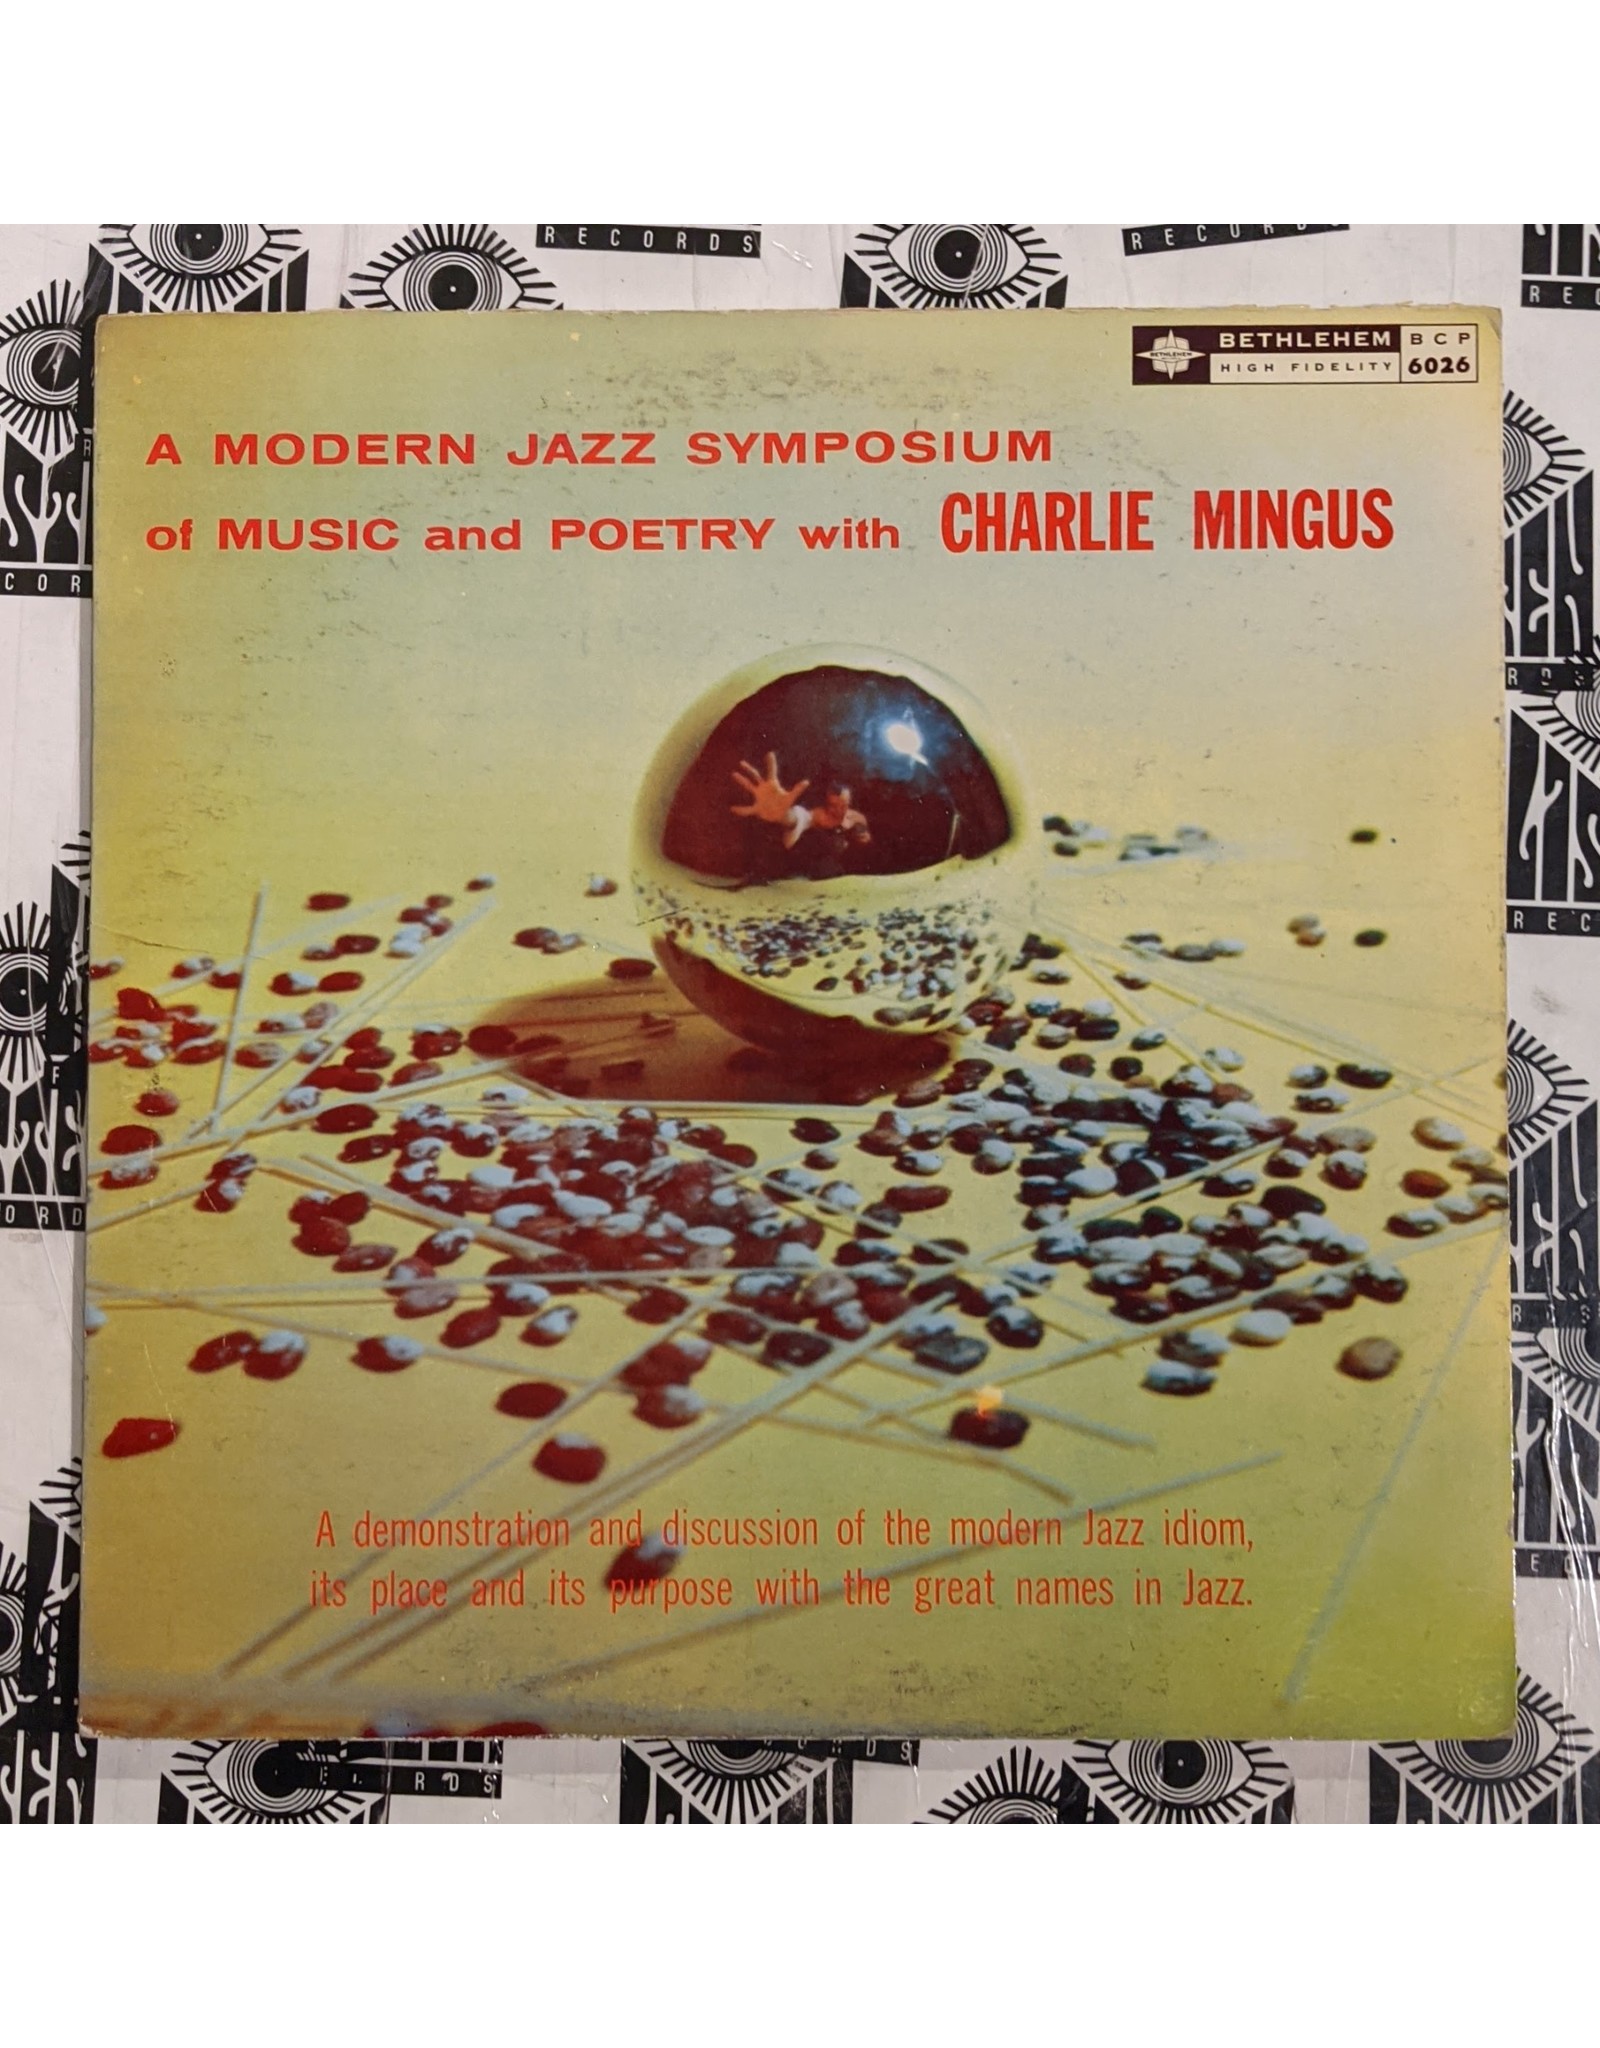 USED: Charlie Mingus: Modern Jazz Symposium of Music and Poetry LP